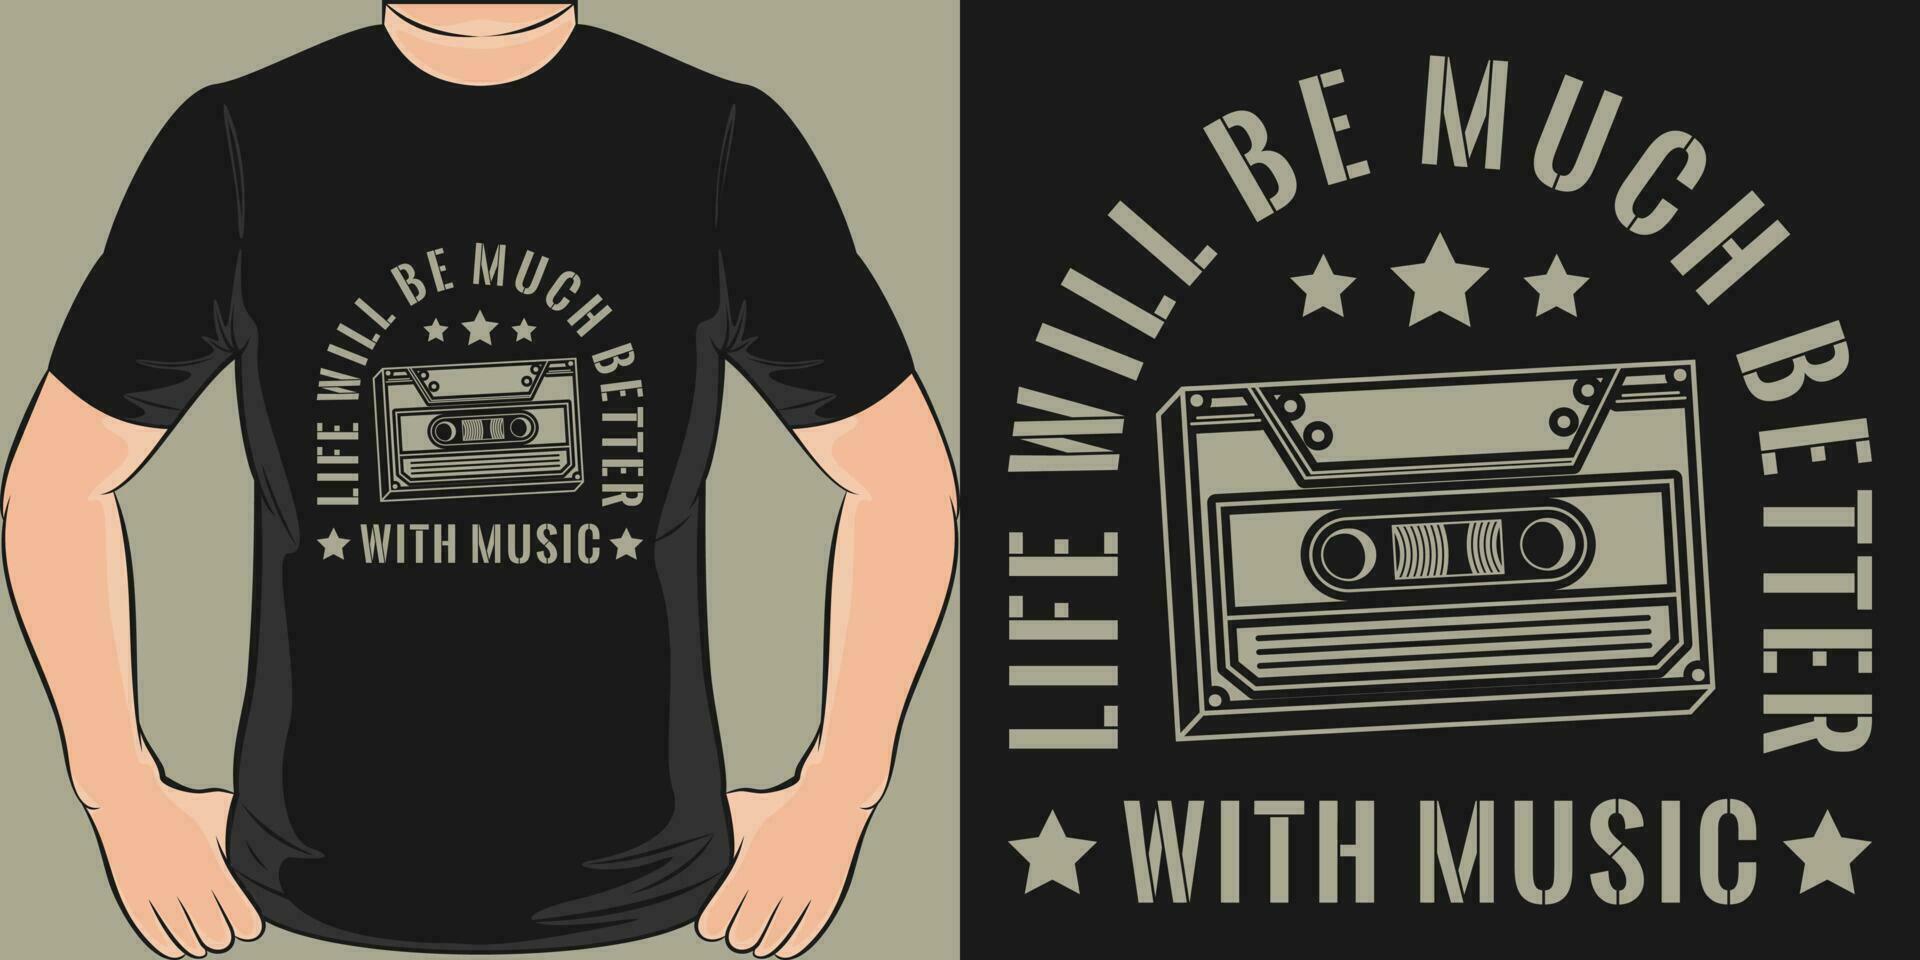 leven zullen worden veel beter met muziek, muziek- citaat t-shirt ontwerp. vector